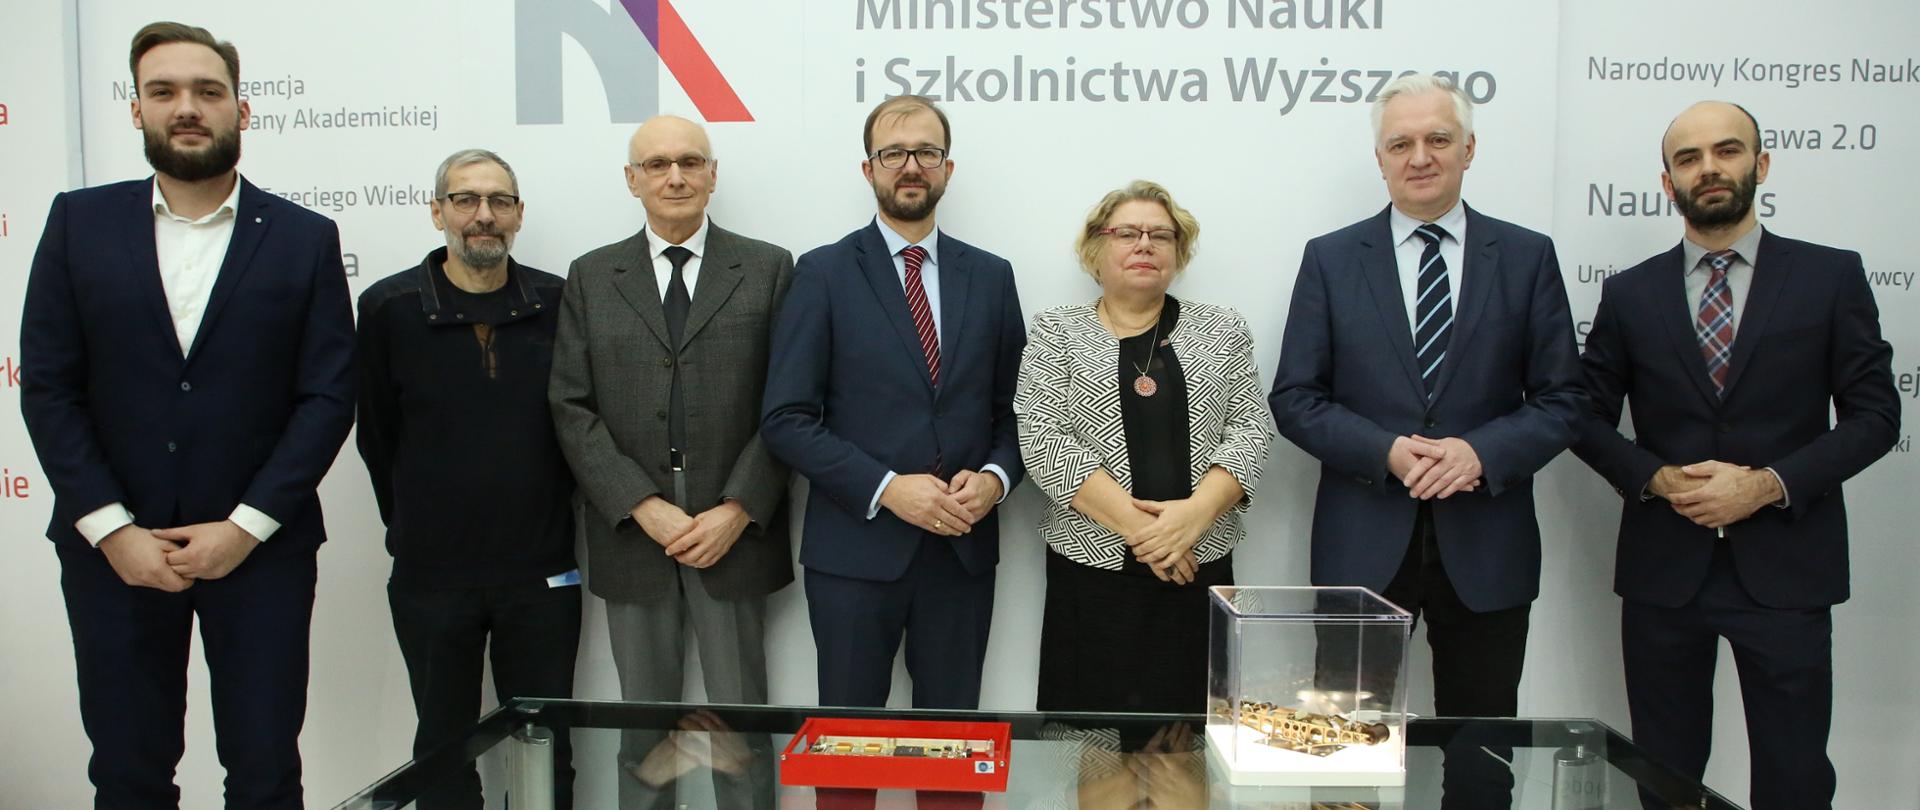 Na zdjęciu widać wicepremiera Jarosława Gowina, wiceministra Piotra Dardzińskiego oraz przedstawicieli firmy Astronika oraz Centrum Badań Kosmicznych PAN.